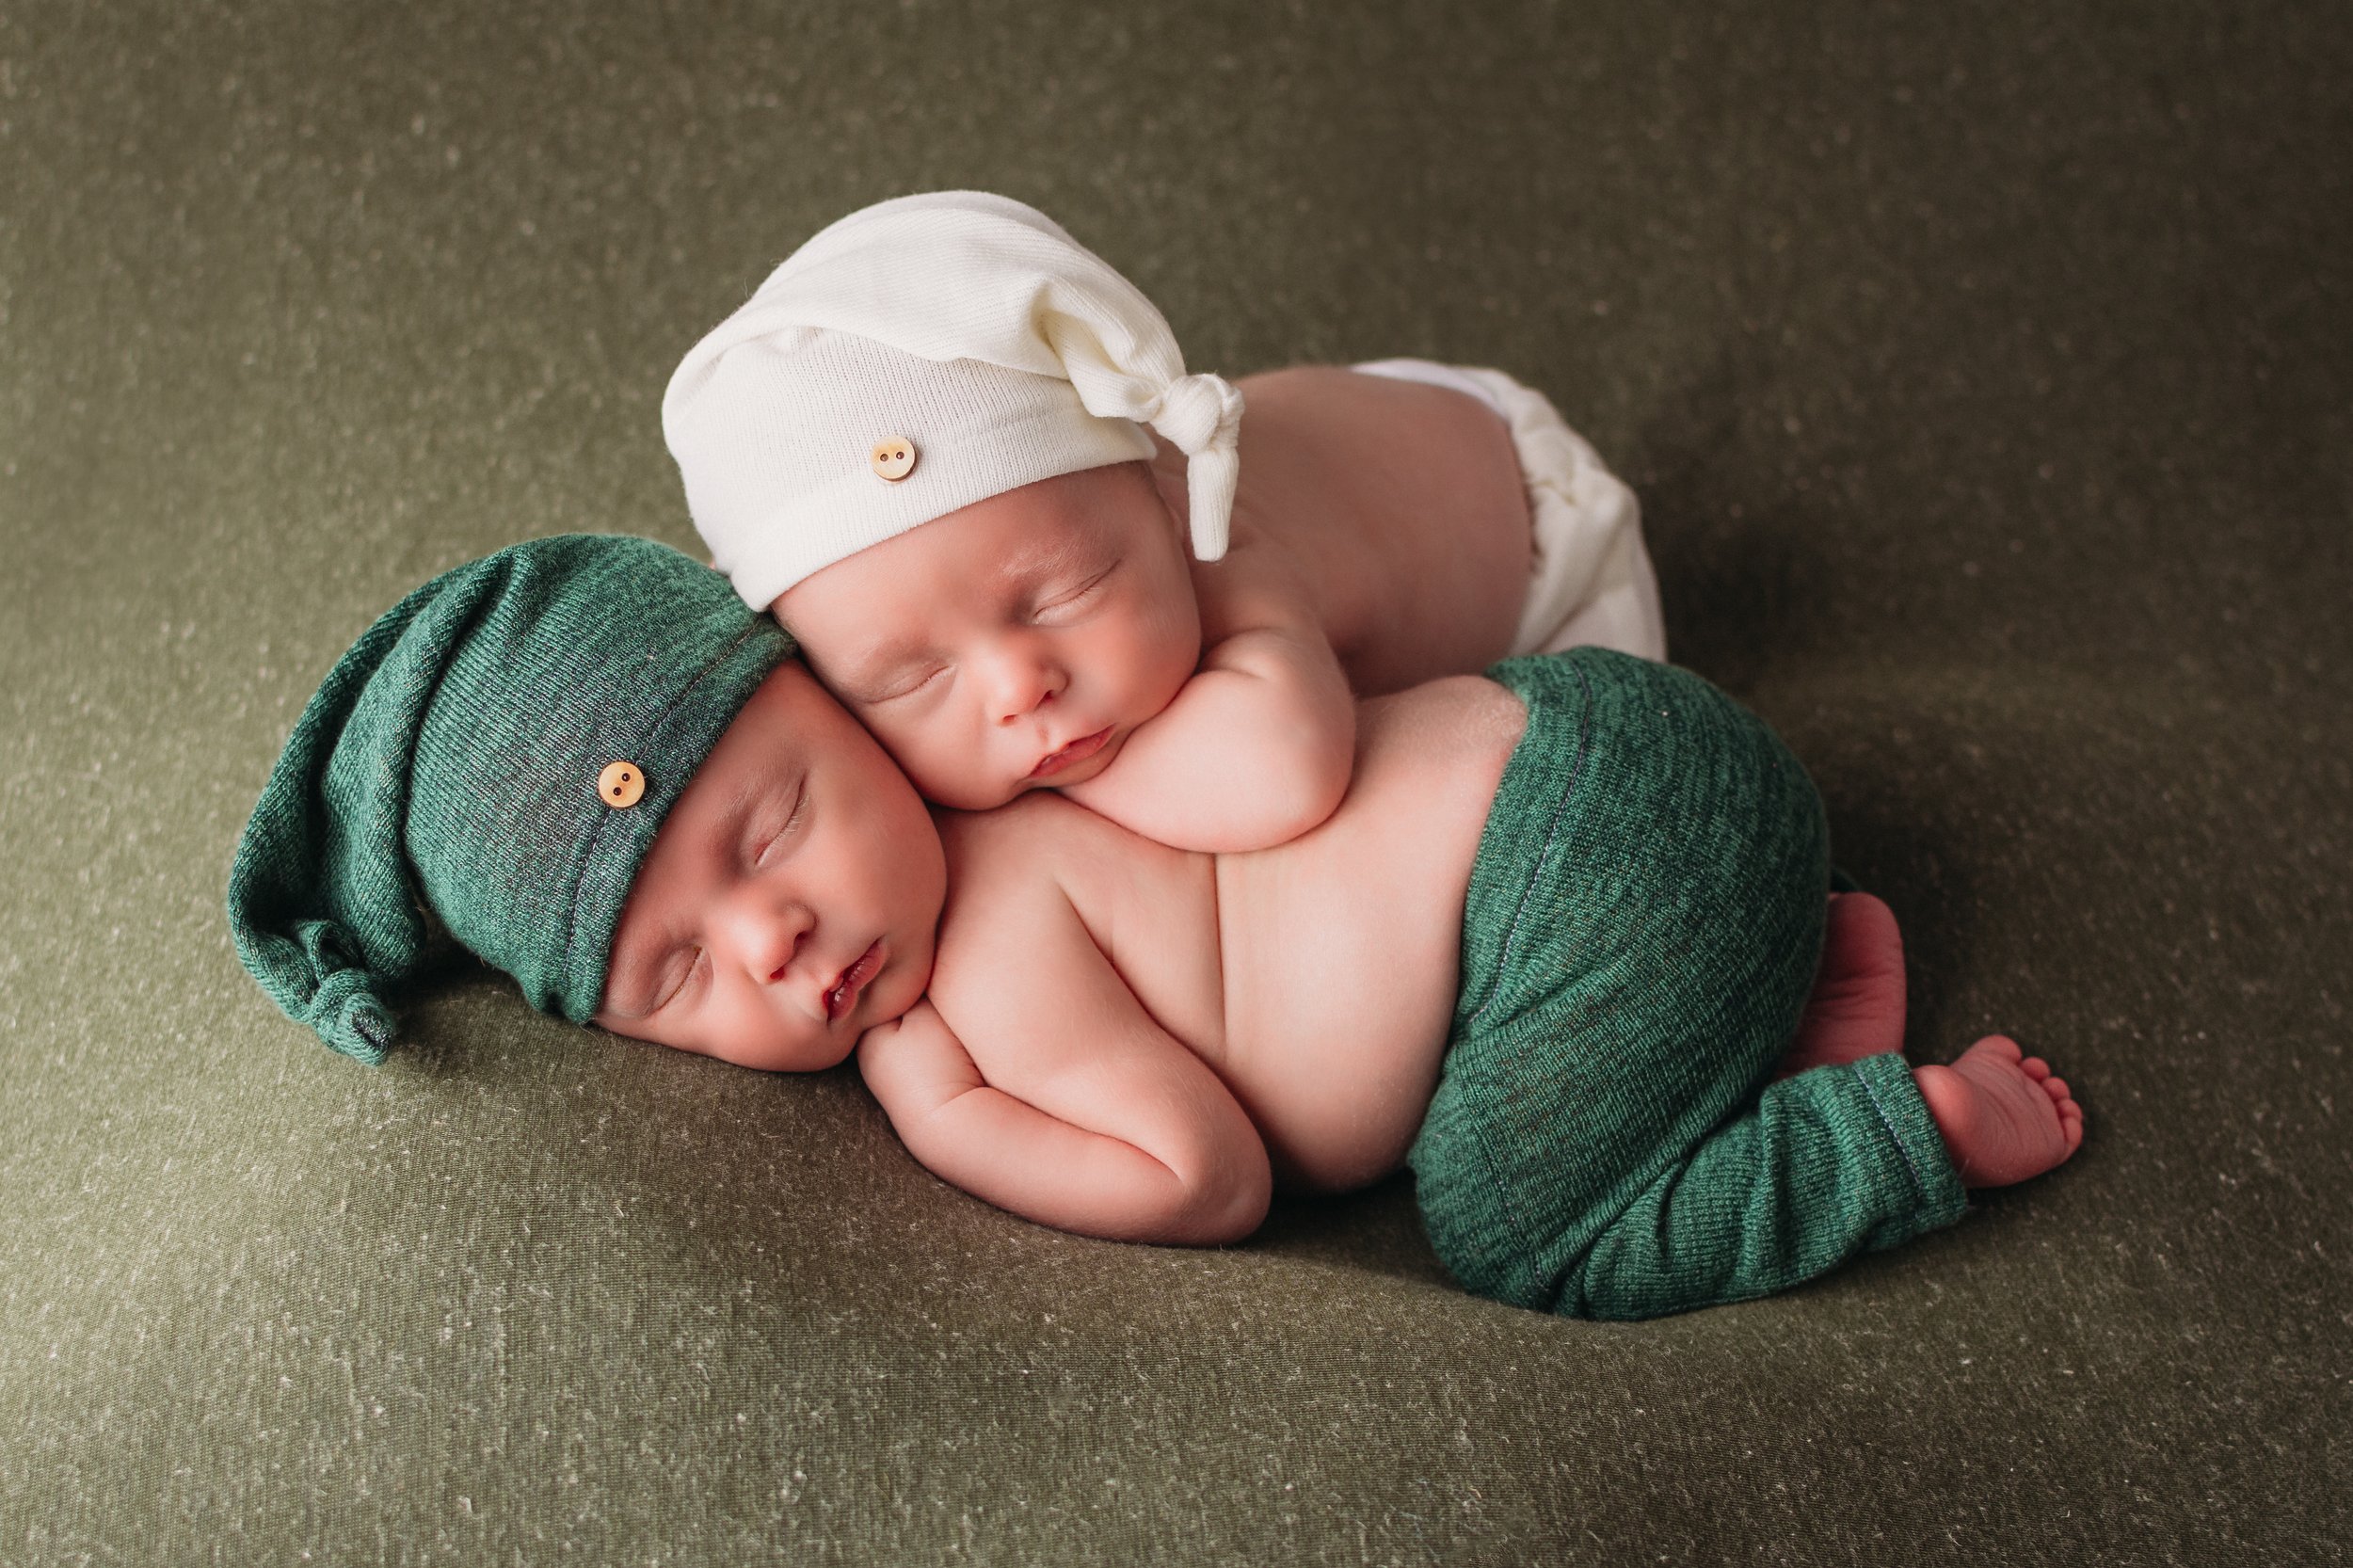 Newborn baby boy twins sleeping snuggled